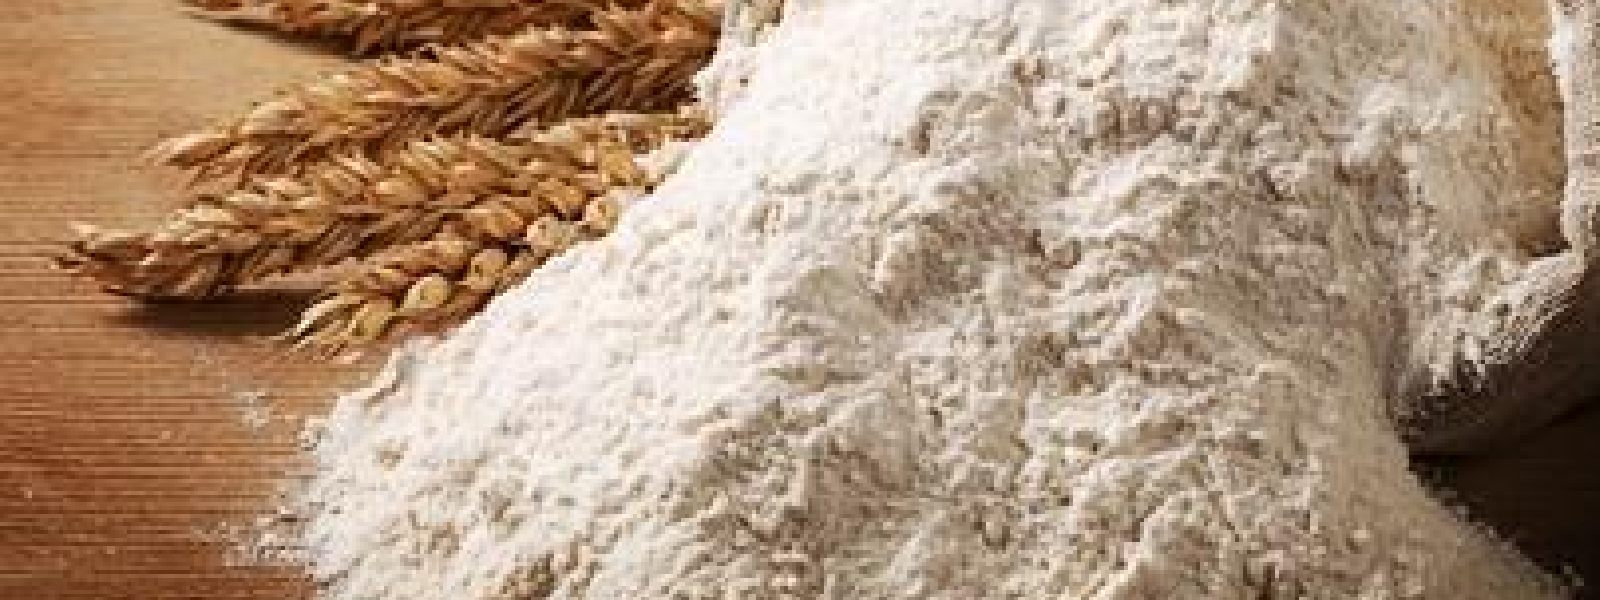 Wheat Flour from Turkey and Dubai